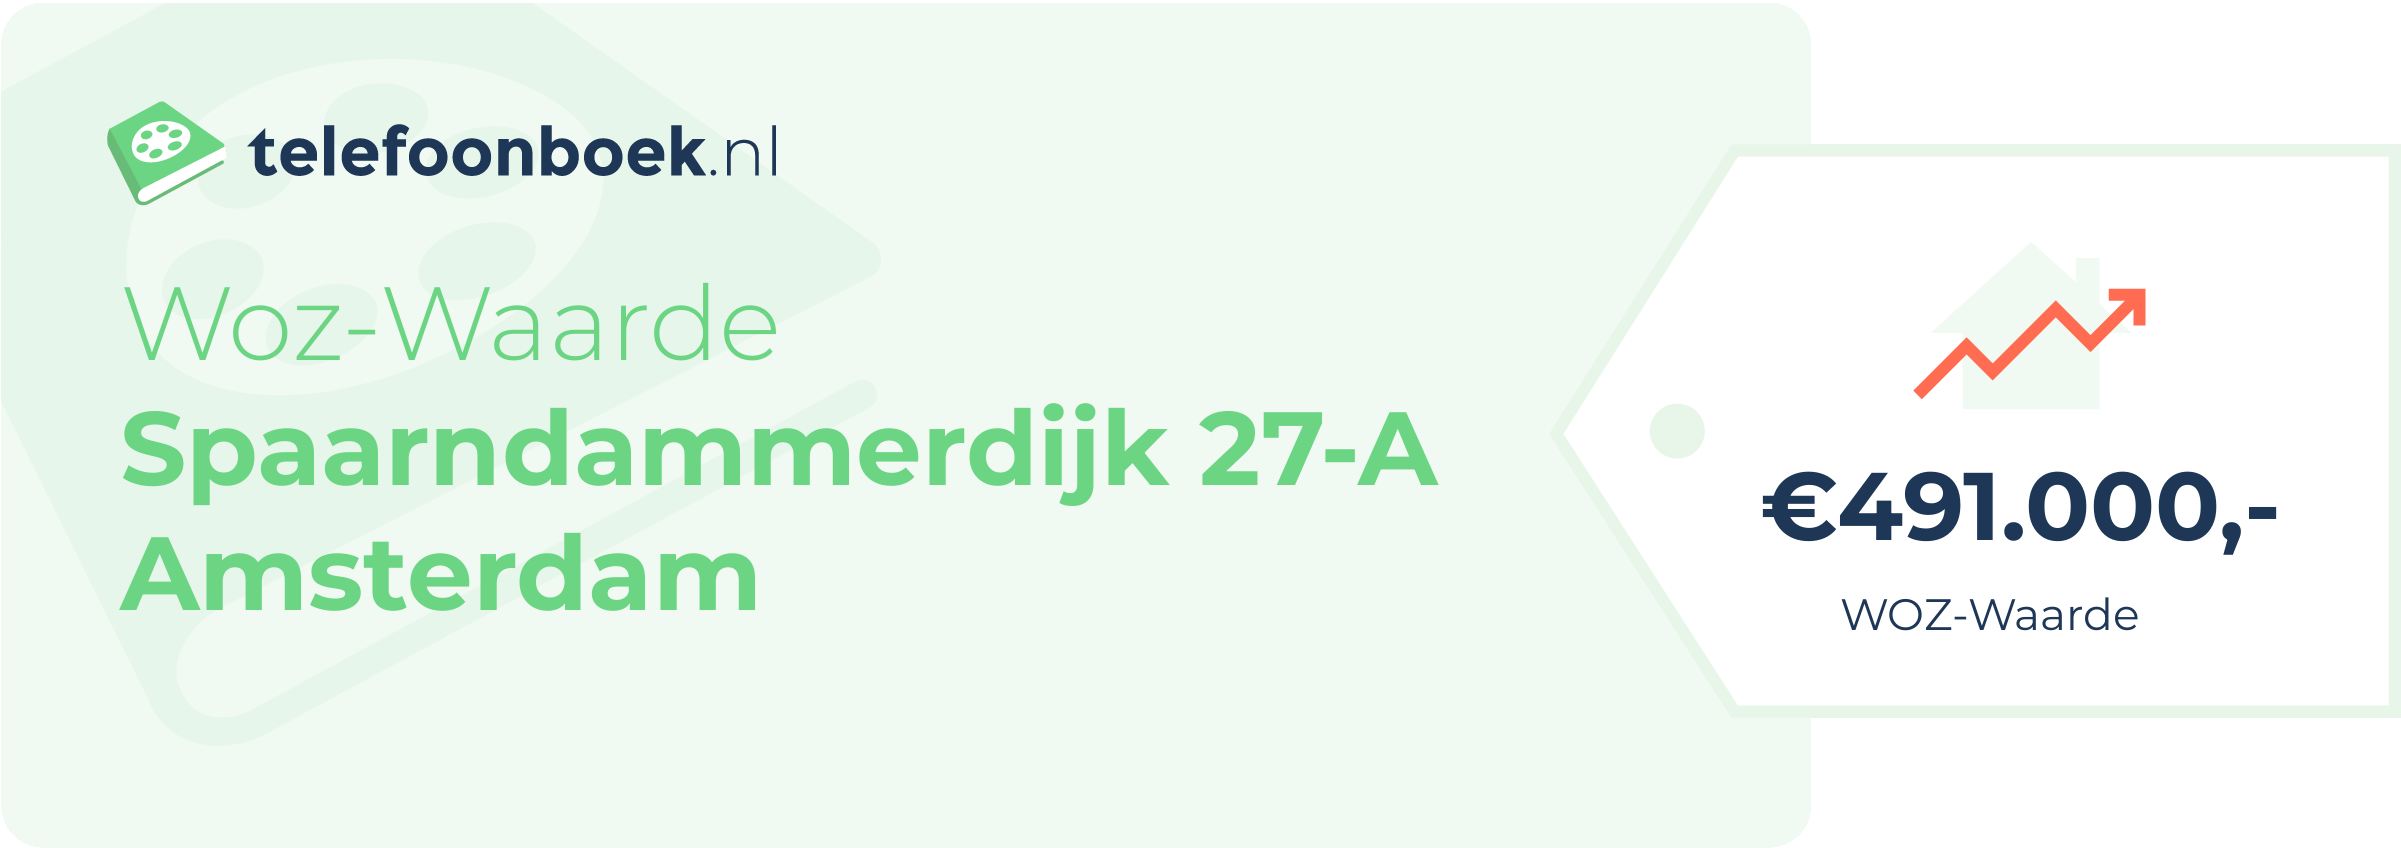 WOZ-waarde Spaarndammerdijk 27-A Amsterdam